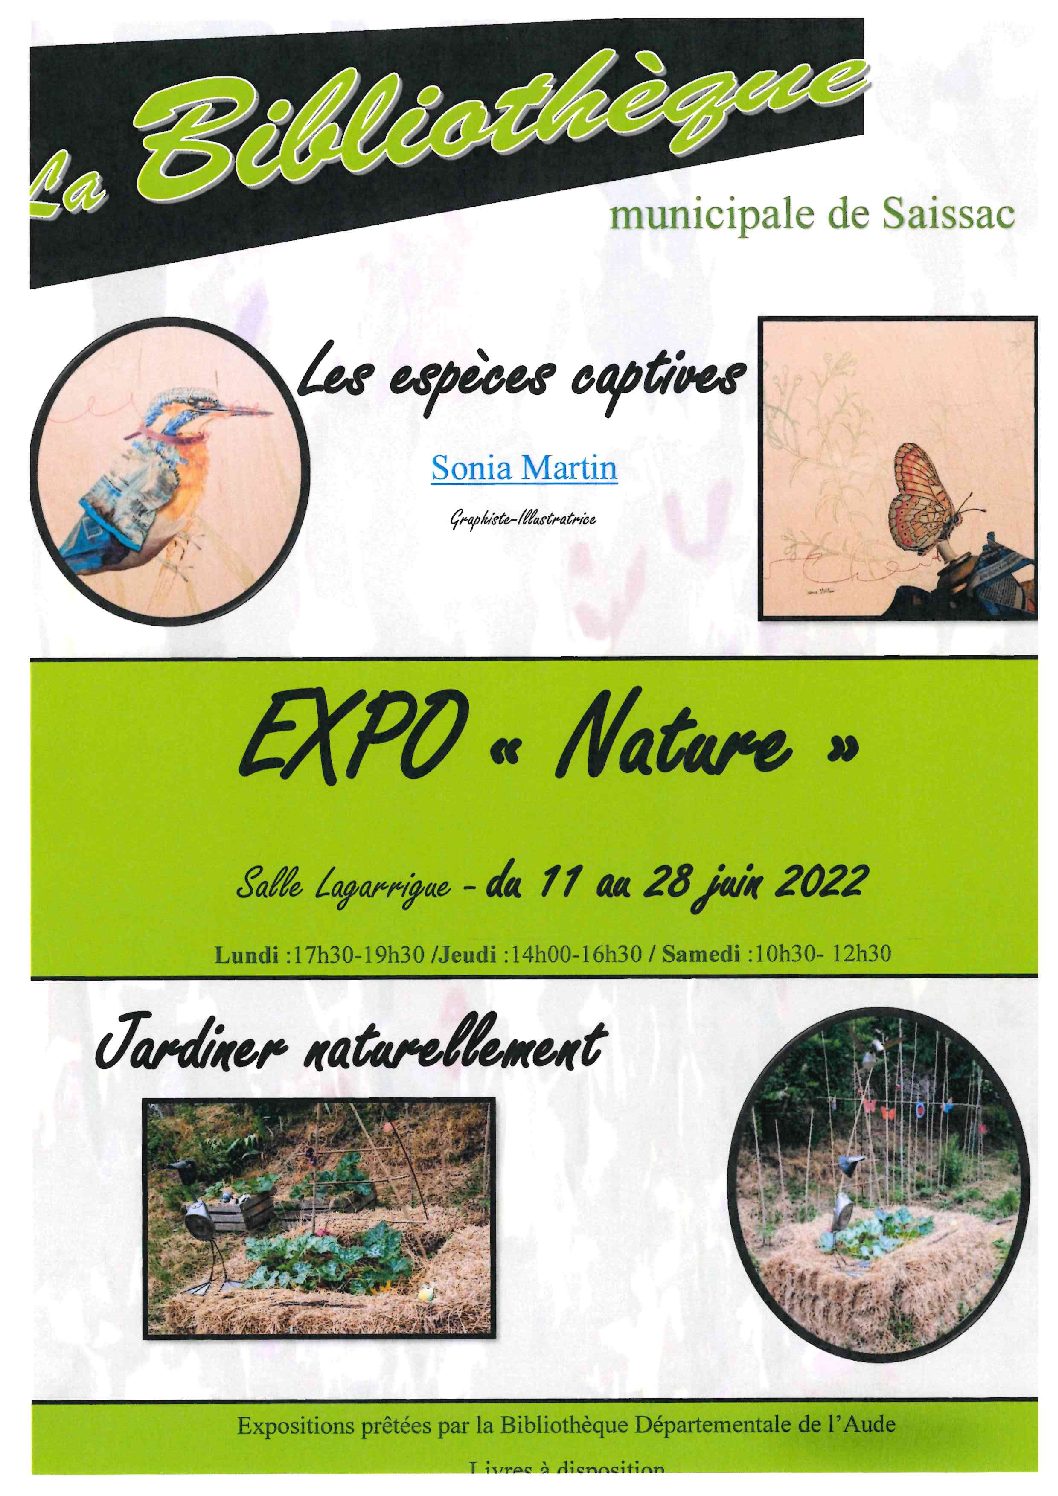 Expo « Nature » à la BMS